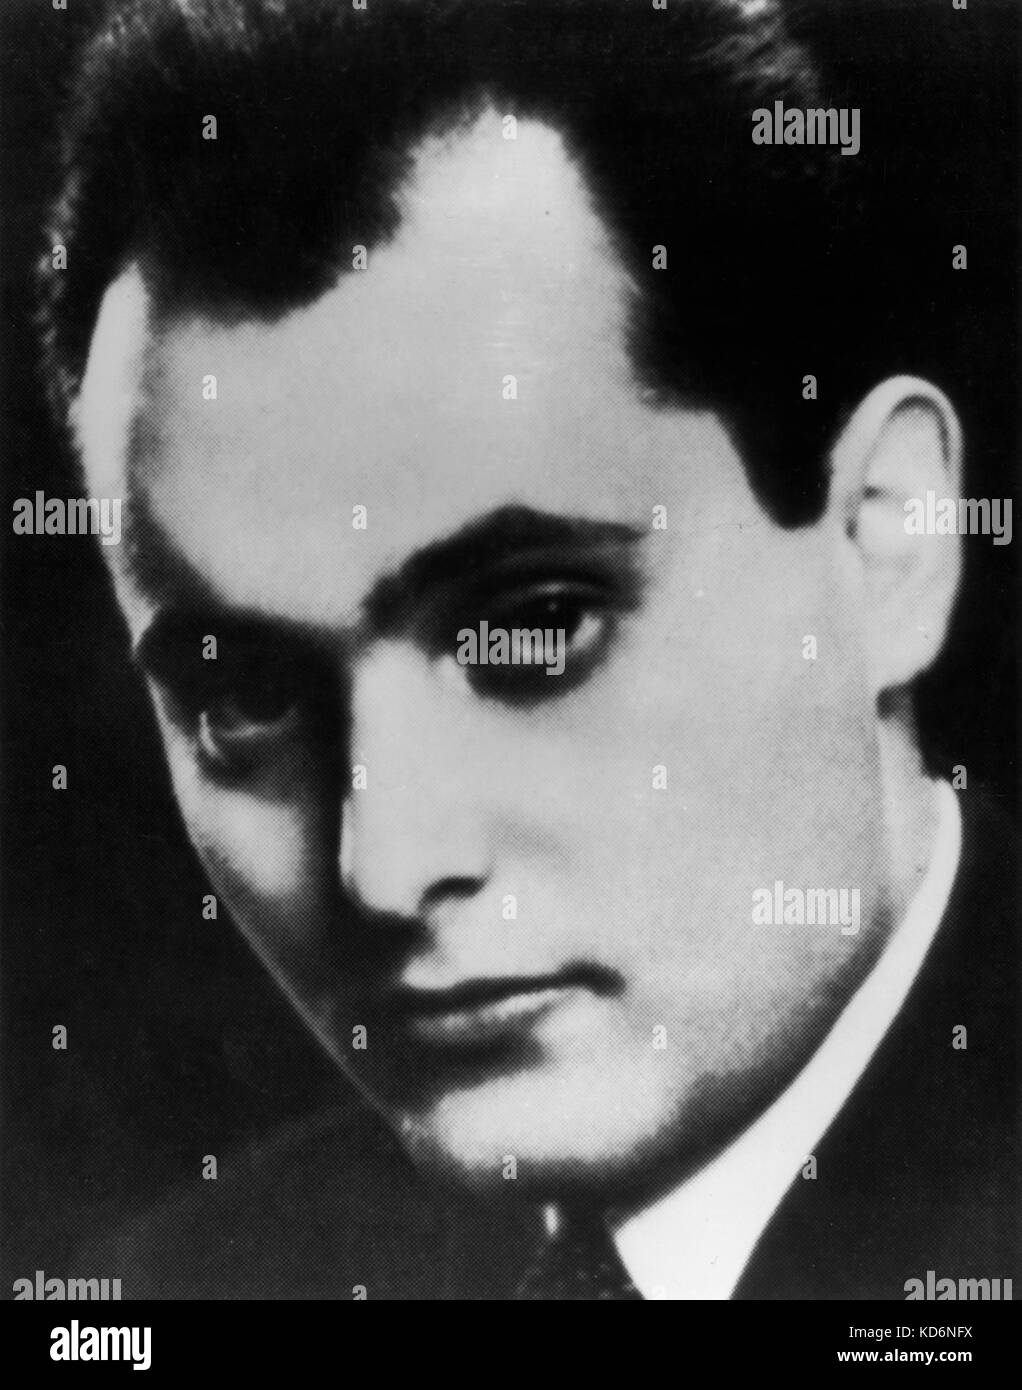 Sir Georg Solti, Zurich 1942. Chef d'orchestre né hongrois, 21 octobre 1912 - 1997. Avec la permission de Lady Solti. Banque D'Images